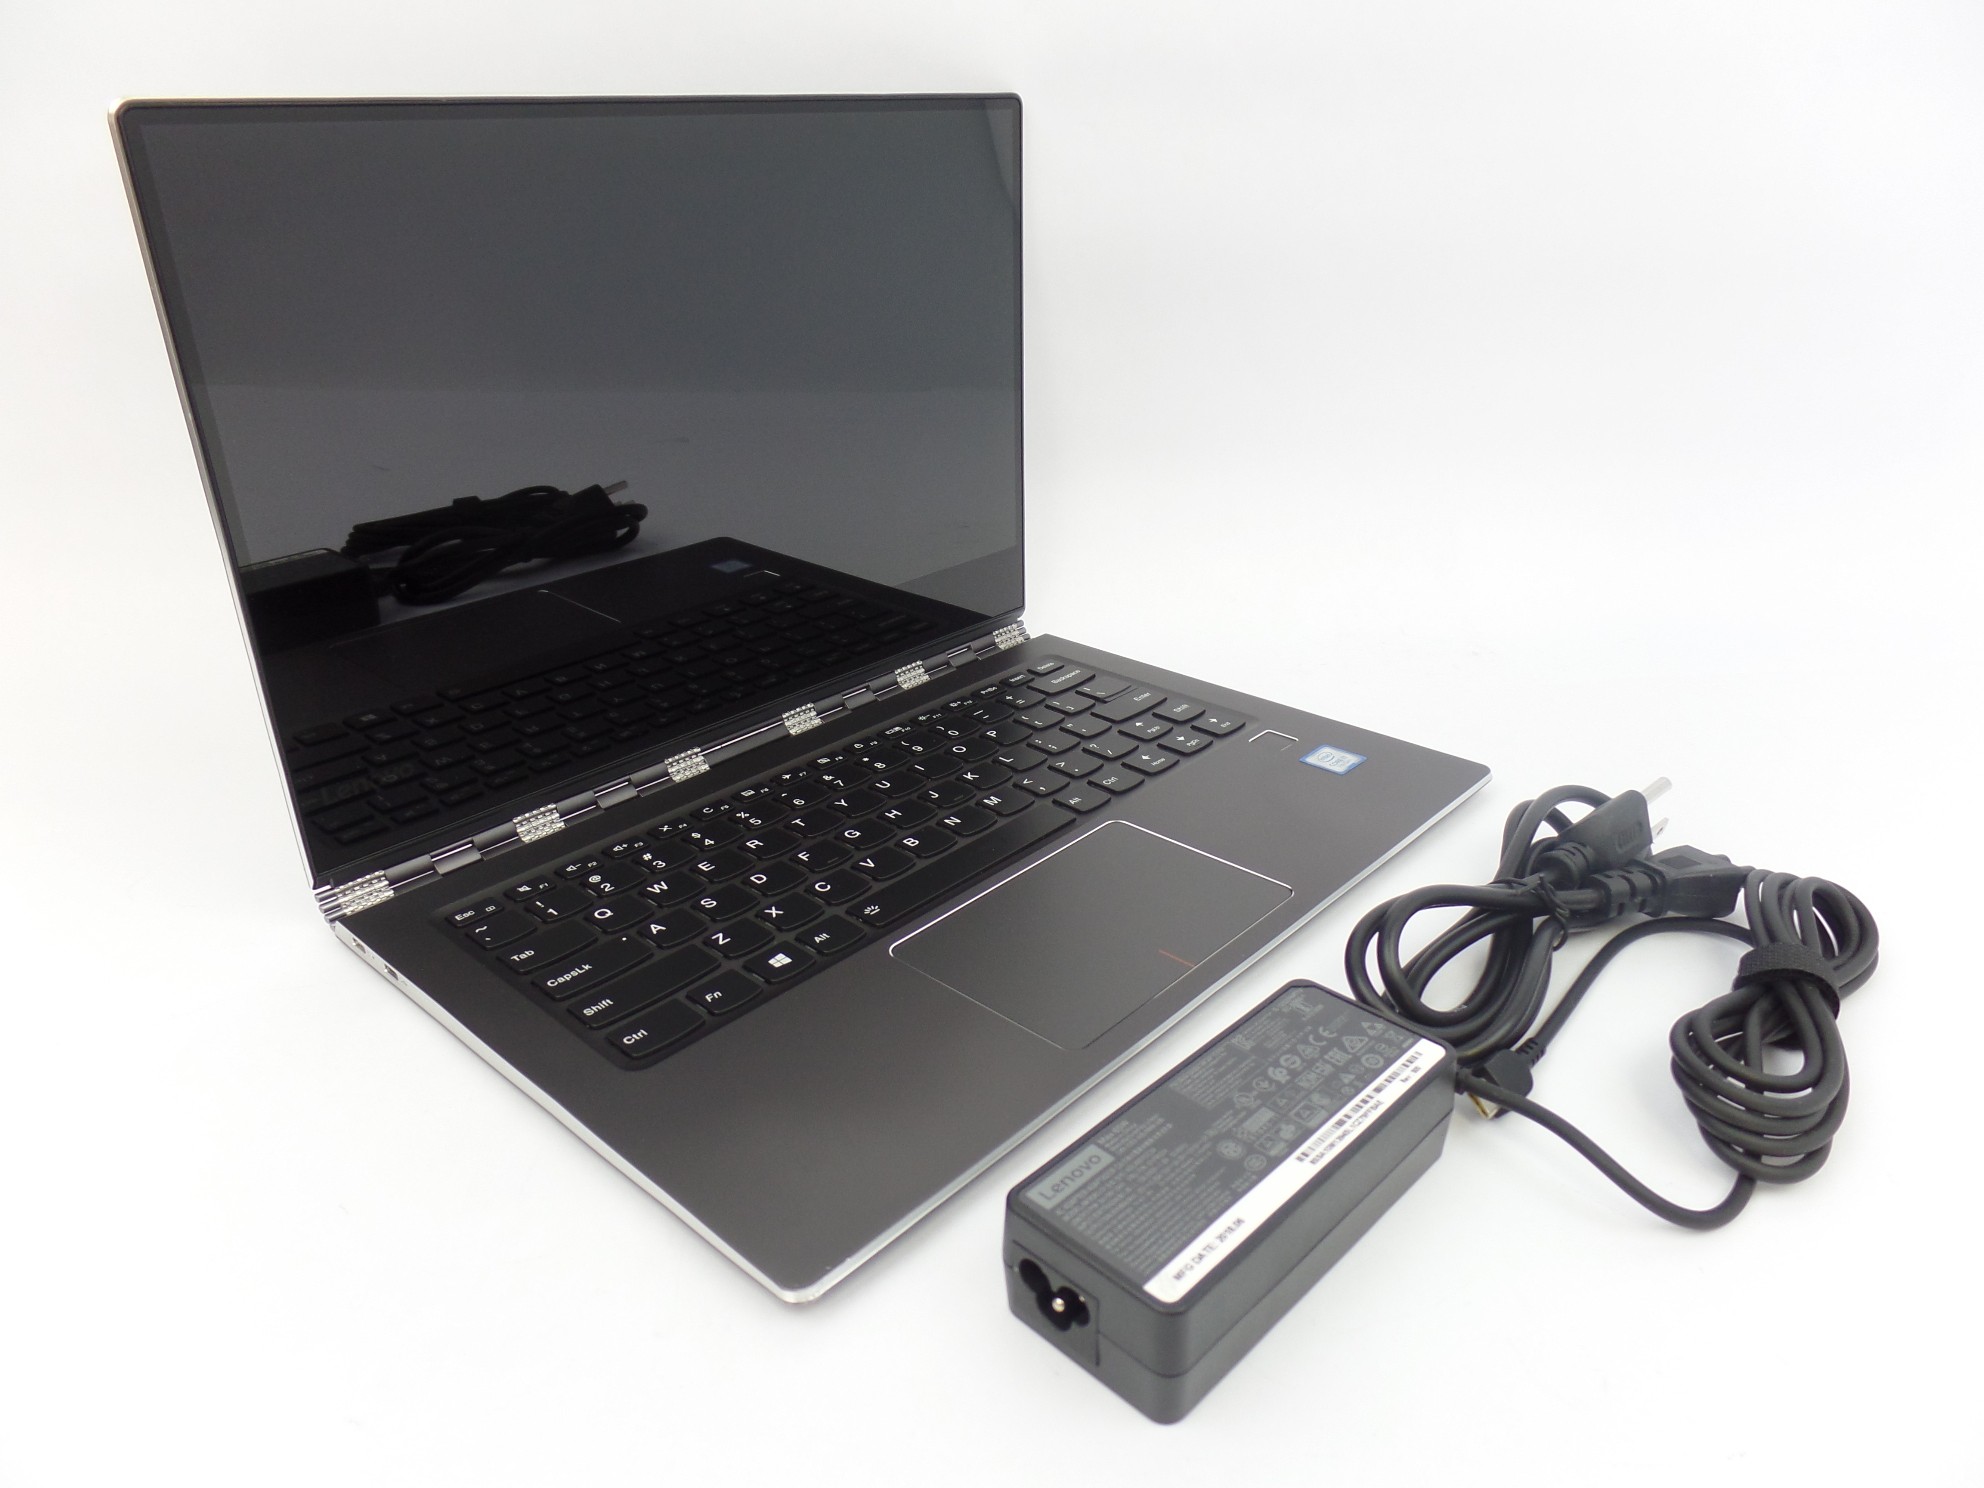 Lenovo Yoga 910-13IKB 13.9" FHD Touch i7-7500U 2.7GH 8GB 256GB SSD W10H Laptop U